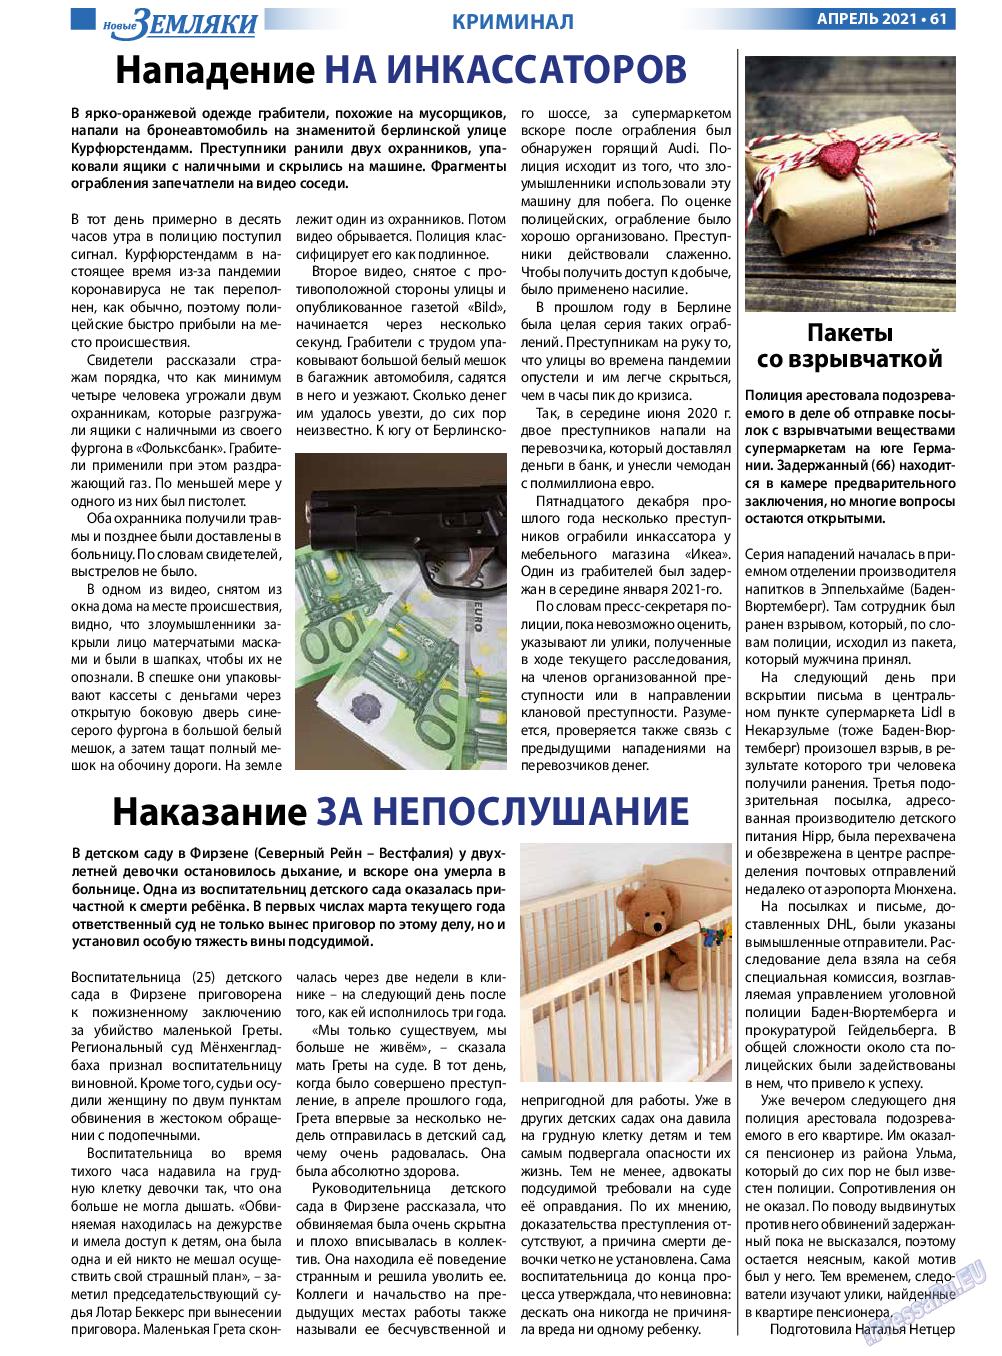 Новые Земляки, газета. 2021 №4 стр.61